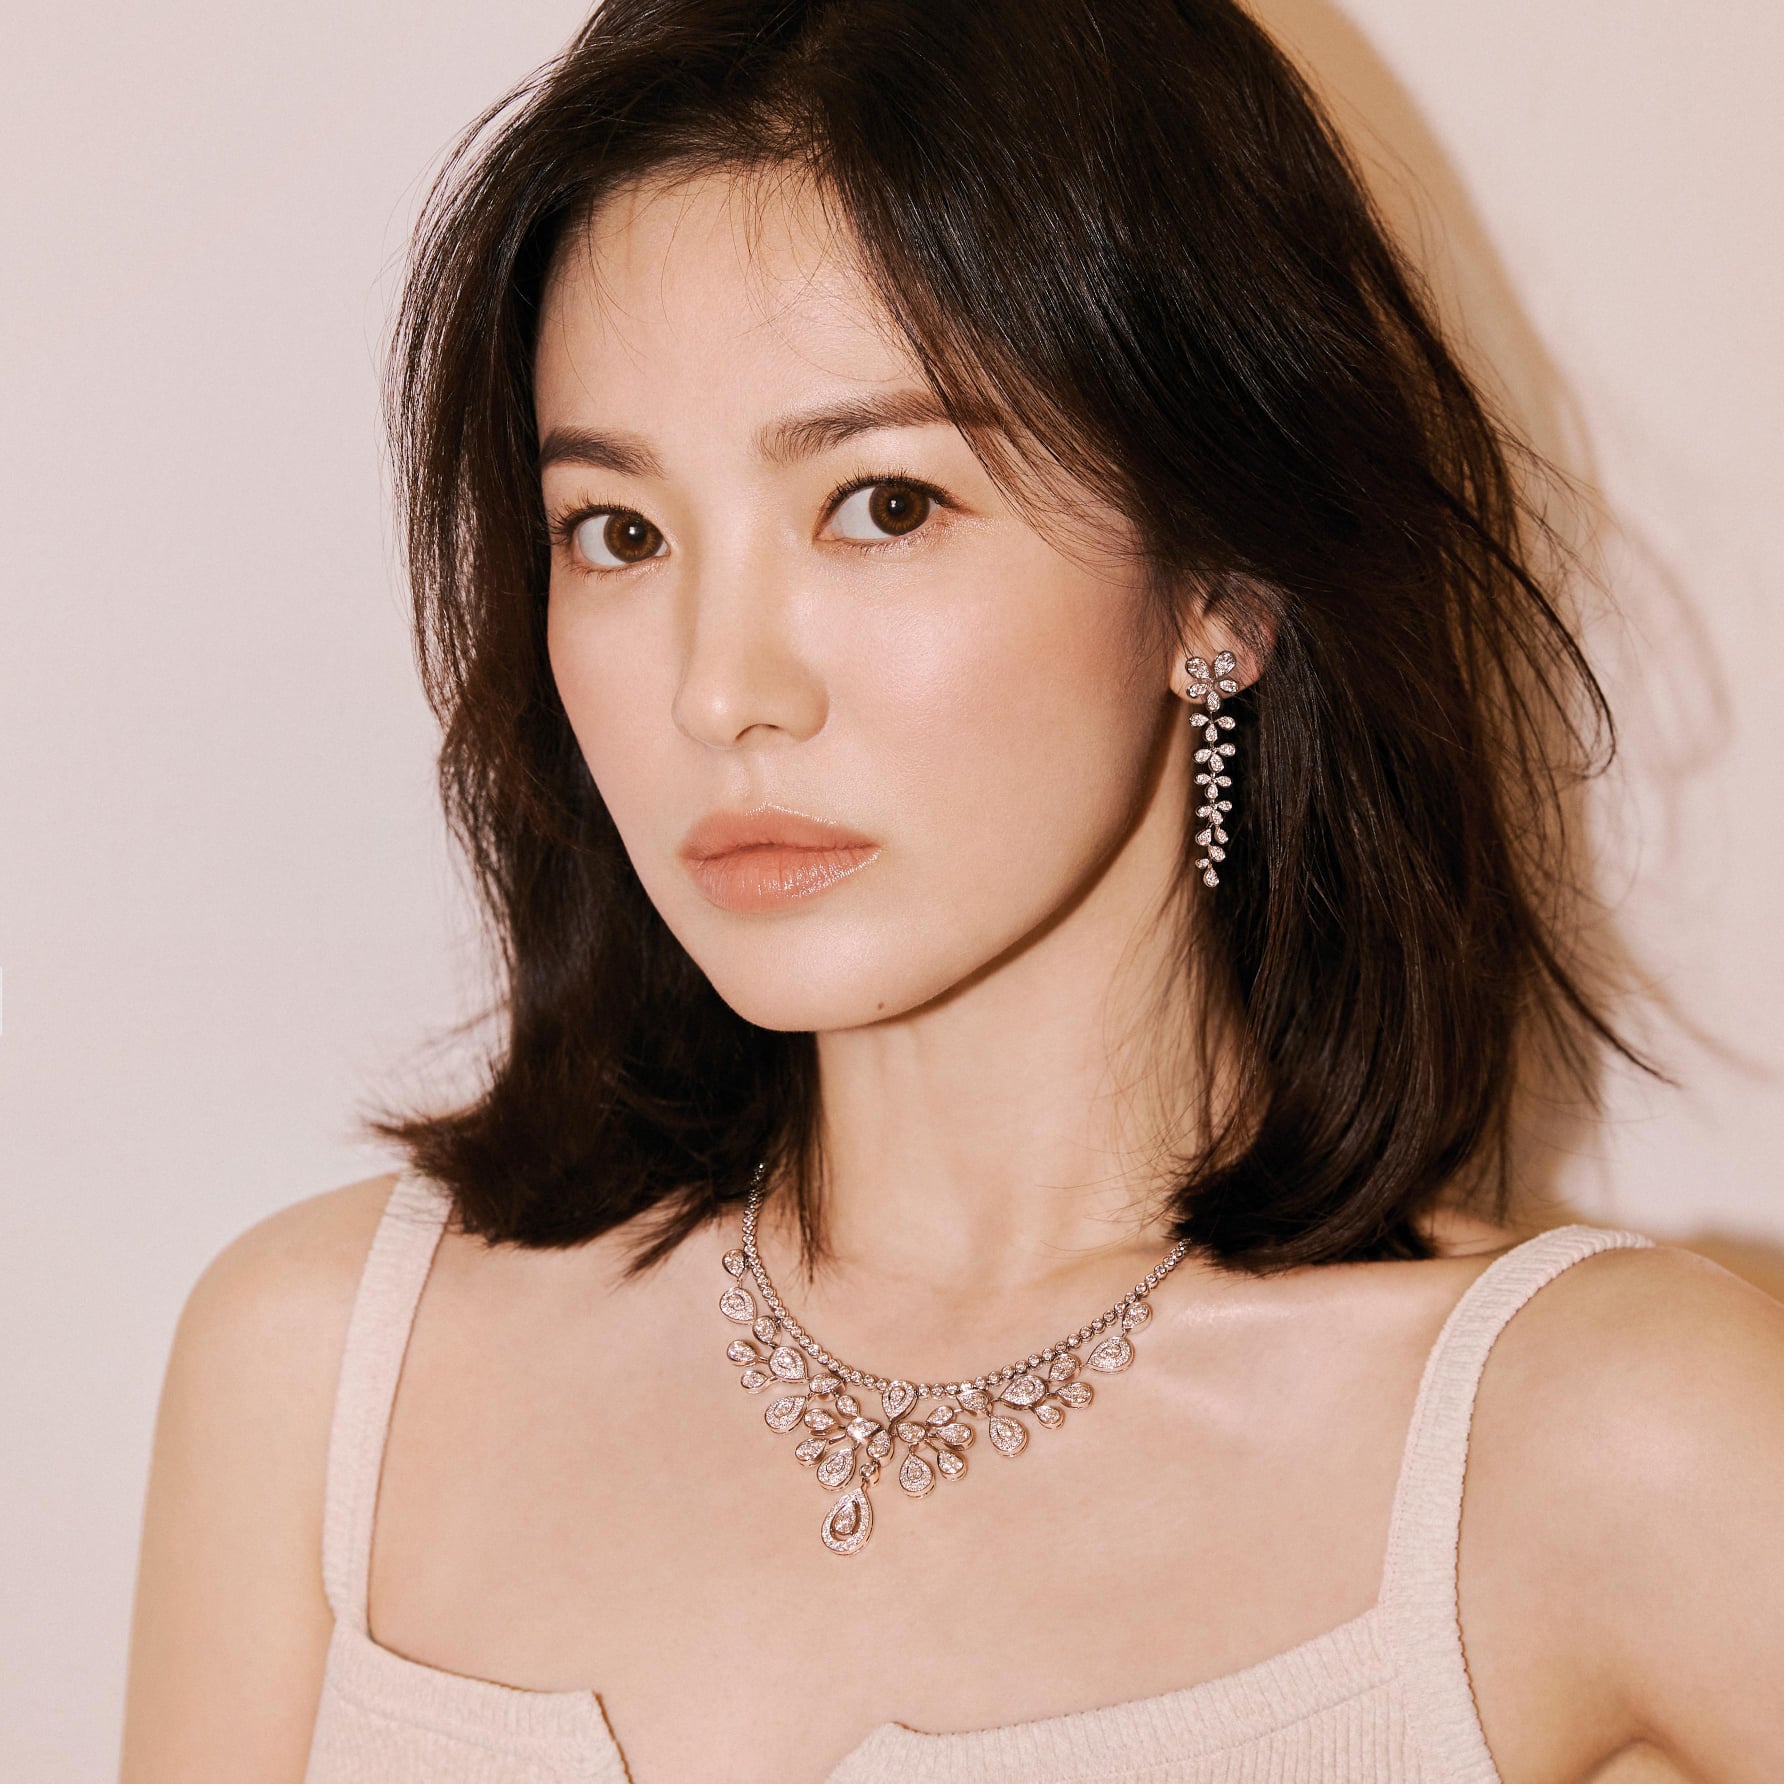 Song Hye Kyo hiếm khi mặc đồ hở nhưng hễ mặc là ai cũng phải bất ngờ với điểm tuyệt phẩm này - Ảnh 6.